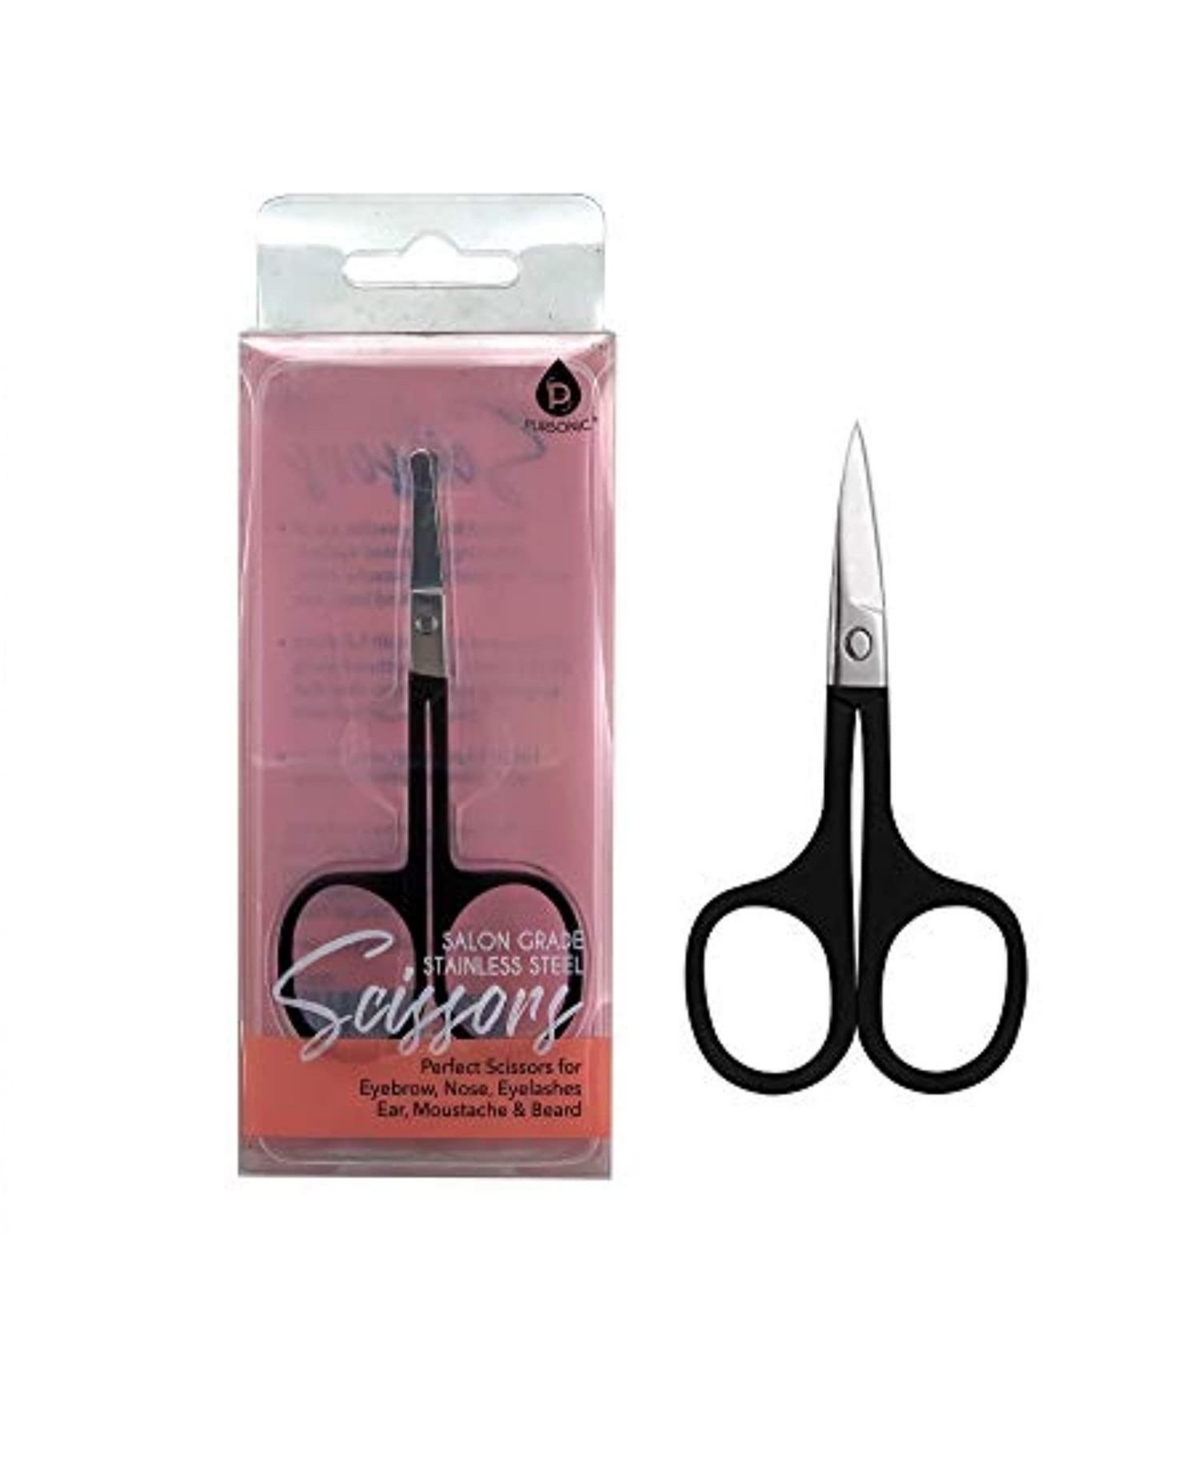 Salon Grade Stainless Steel Scissors - Black